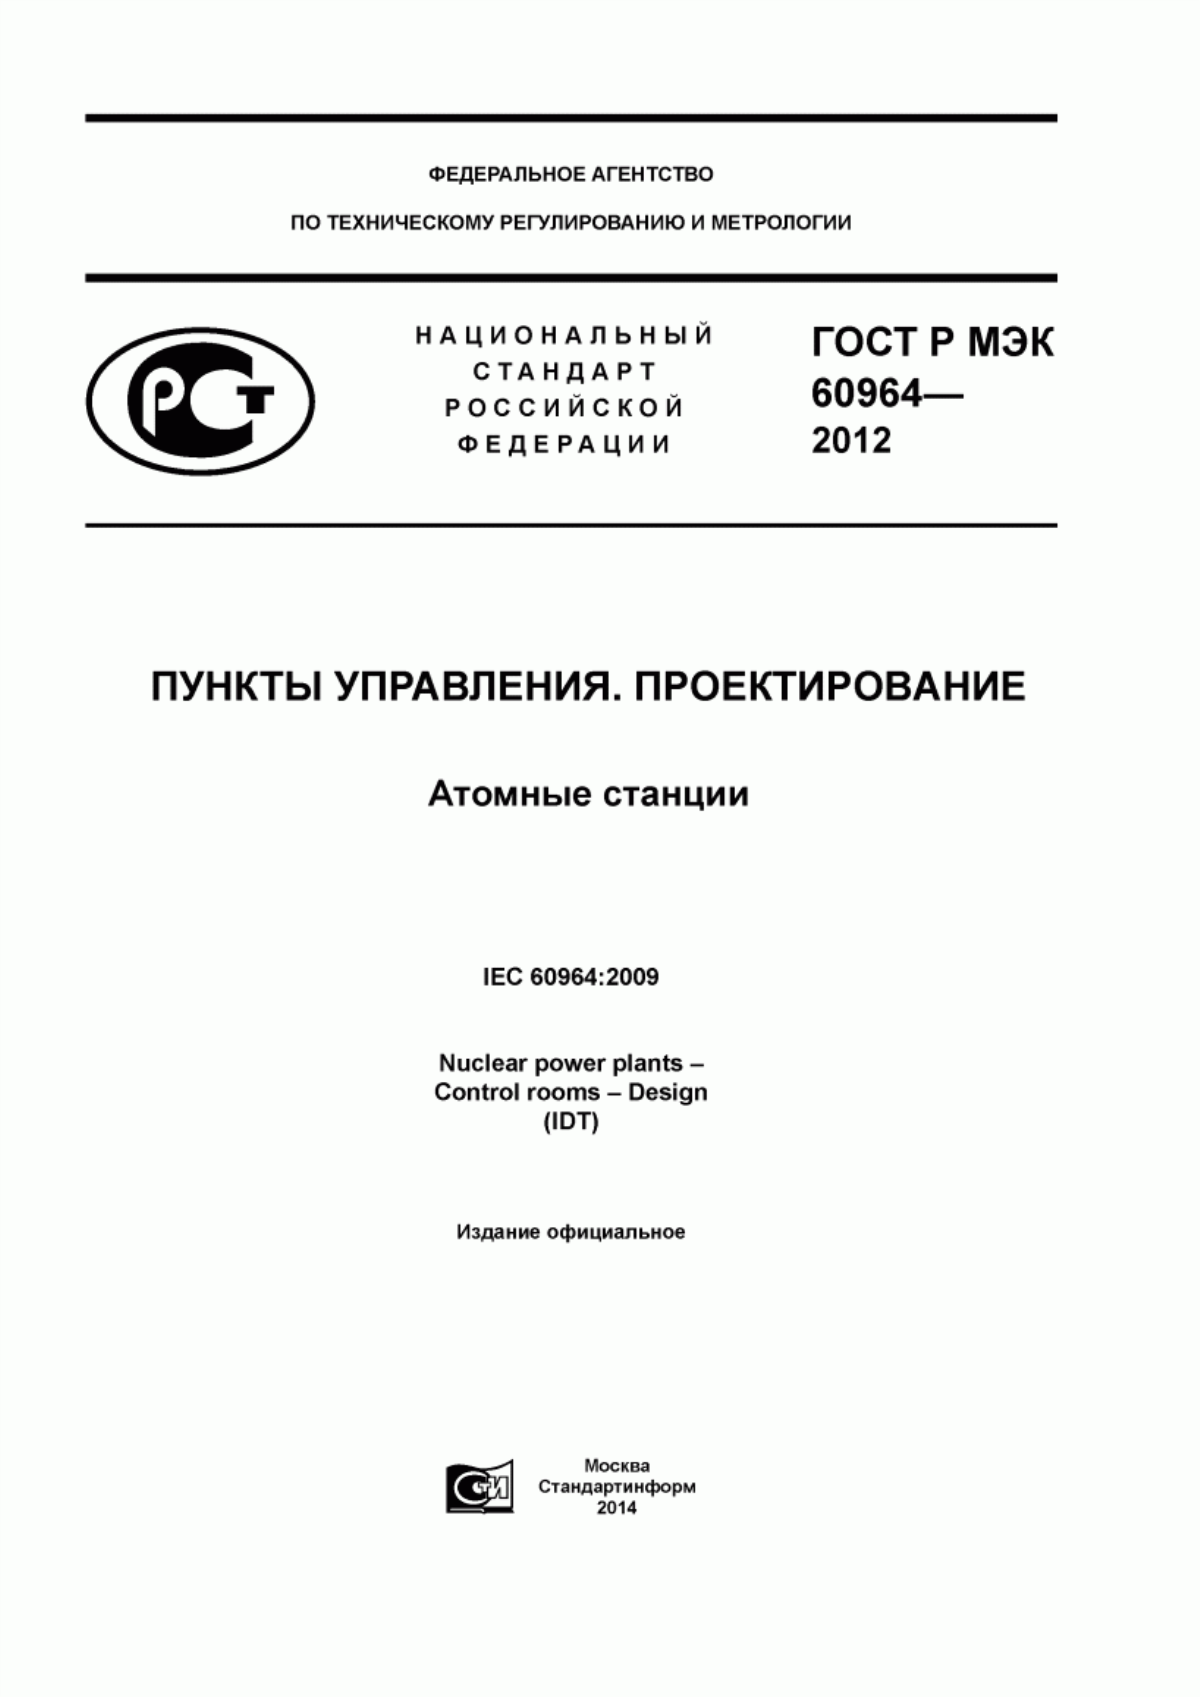 ГОСТ Р МЭК 60964-2012 Атомные станции. Пункты управления. Проектирование